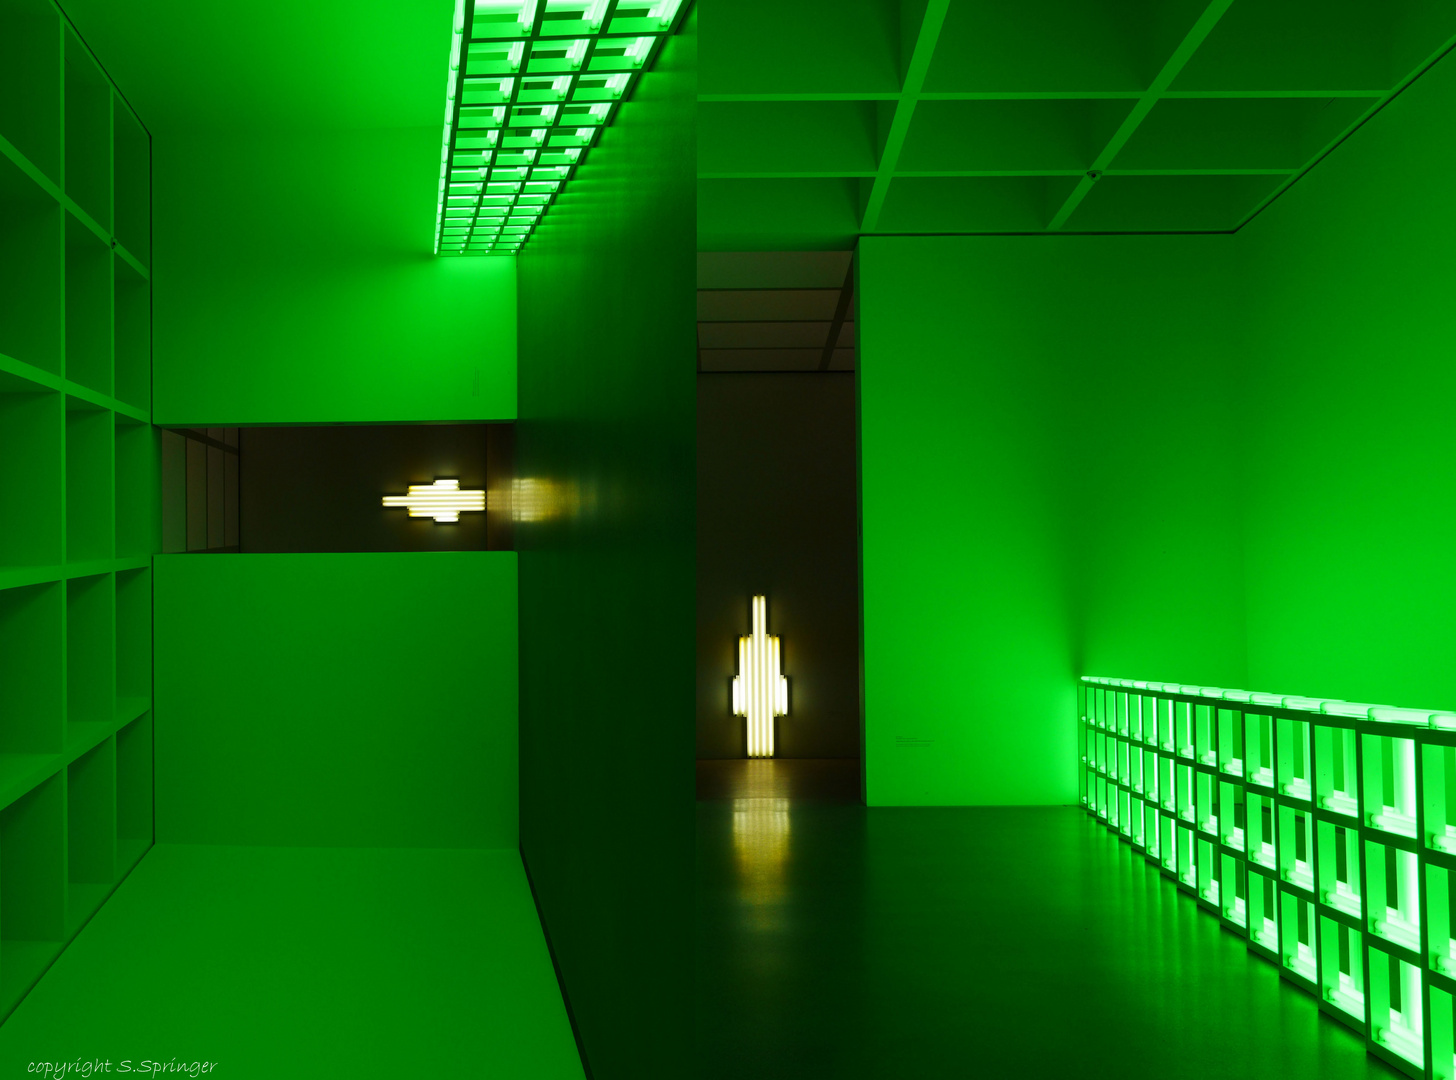 Pinakothek der Moderne im grünen Licht......